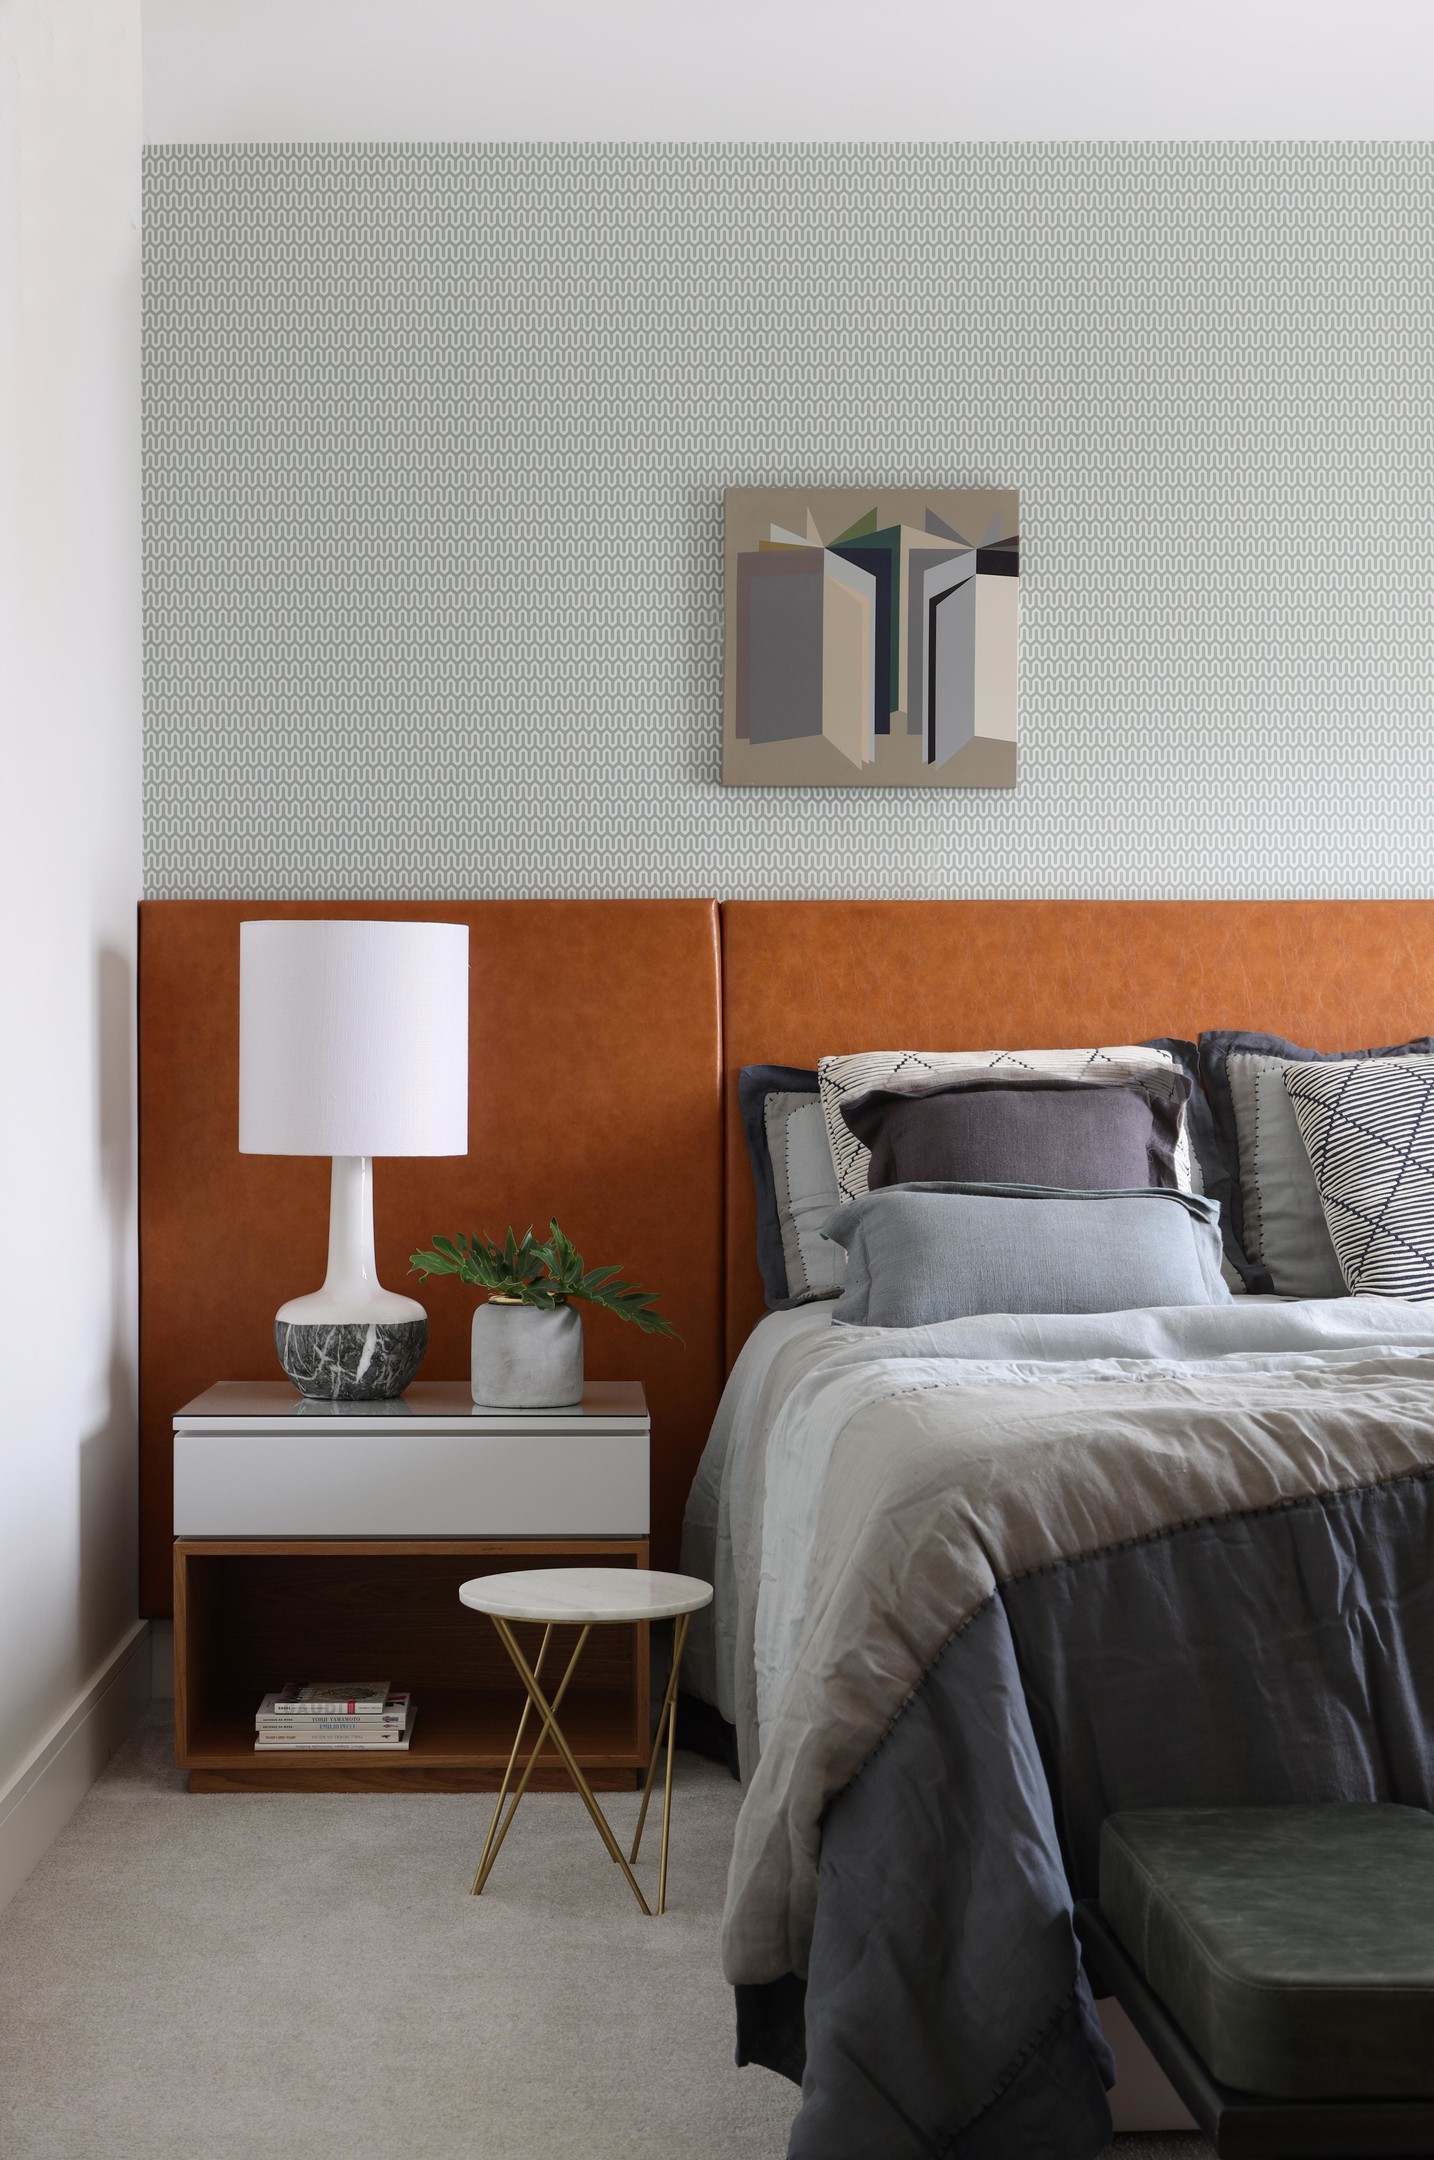 Nếu bức tường lựa chọn kiểu giấy dán màu xám họa tiết trang nhã, tạo điểm nhấn giữa phông nền sơn trắng thì riêng đầu giường lại nổi bật với gam màu cam gạch. Nó được thiết kế với kích thước kéo dài toàn bộ chiều rộng căn phòng, giúp cho giường và táp đầu giường đều có cùng 'điểm tựa'.